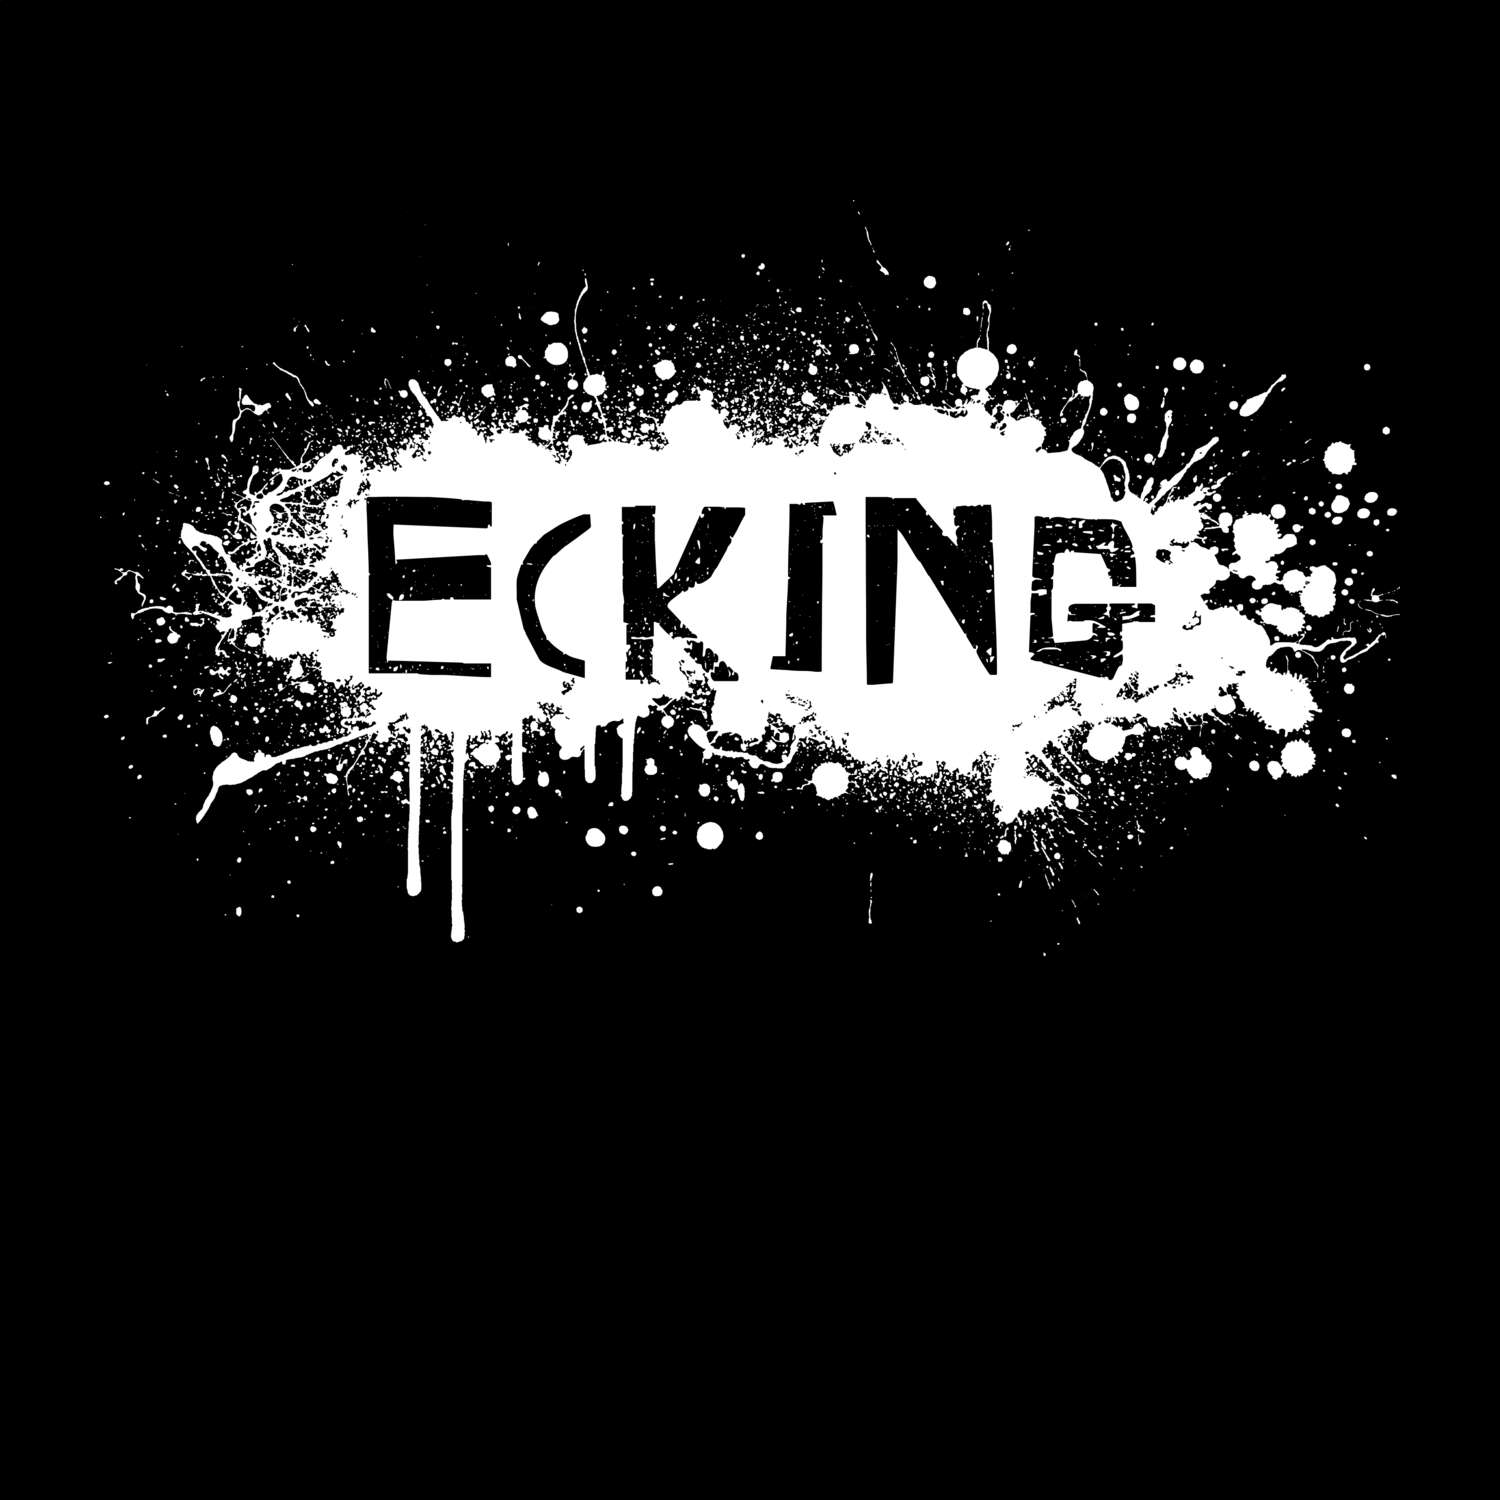 Ecking T-Shirt »Paint Splash Punk«